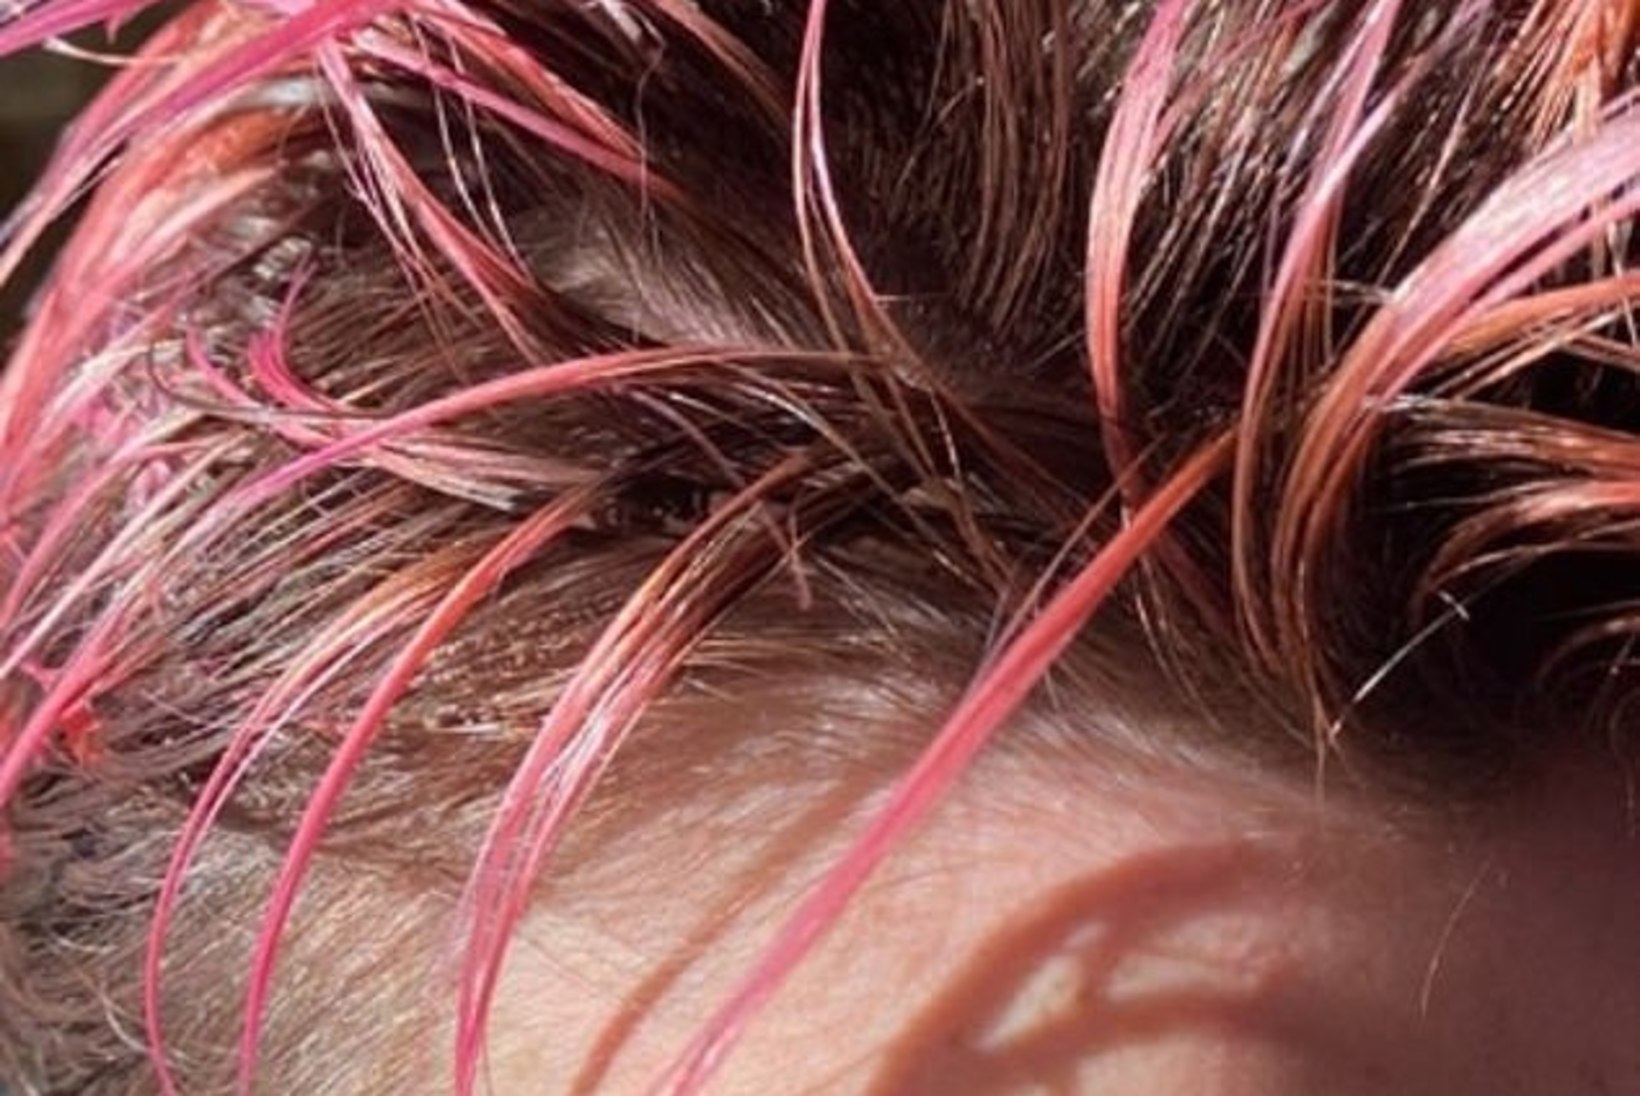 Victoria Beckham ajas ühe poja peaaegu kiilaks ja värvis teise juuksed roosaks